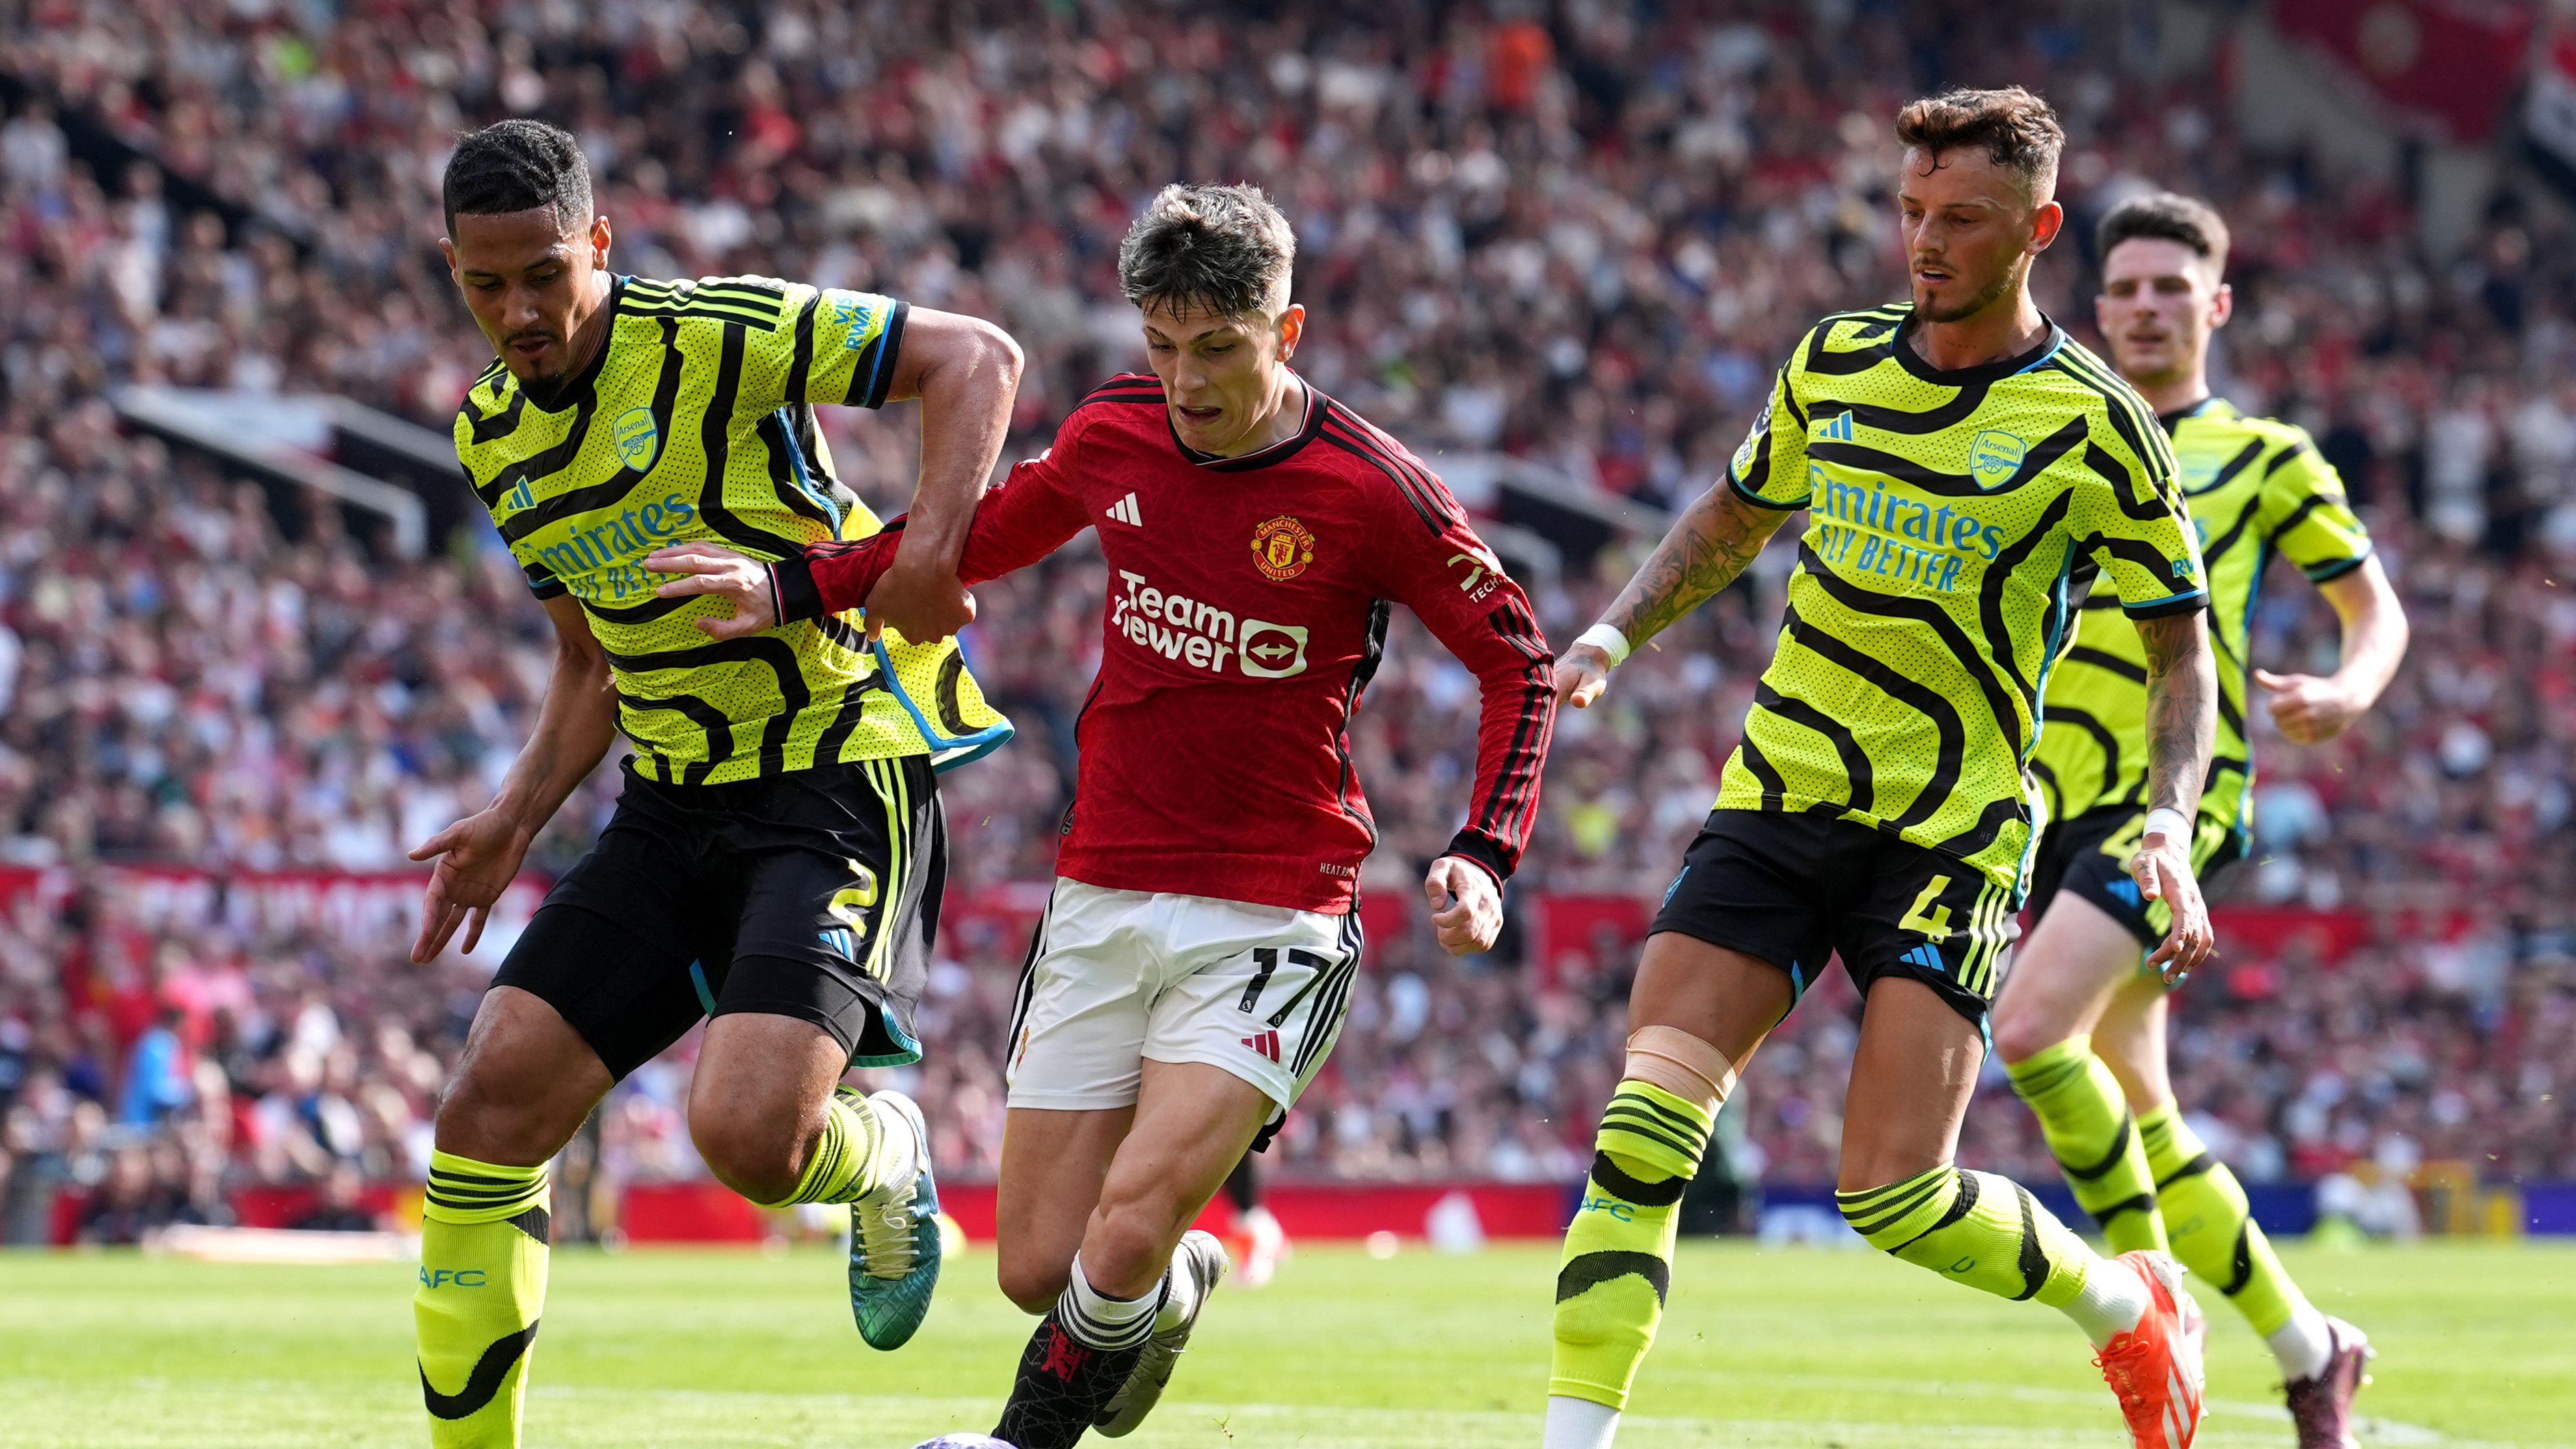 A Man. Unitedet is legyőzte, egy lépéssel közelebb a bajnoki címhez az Arsenal – videóval